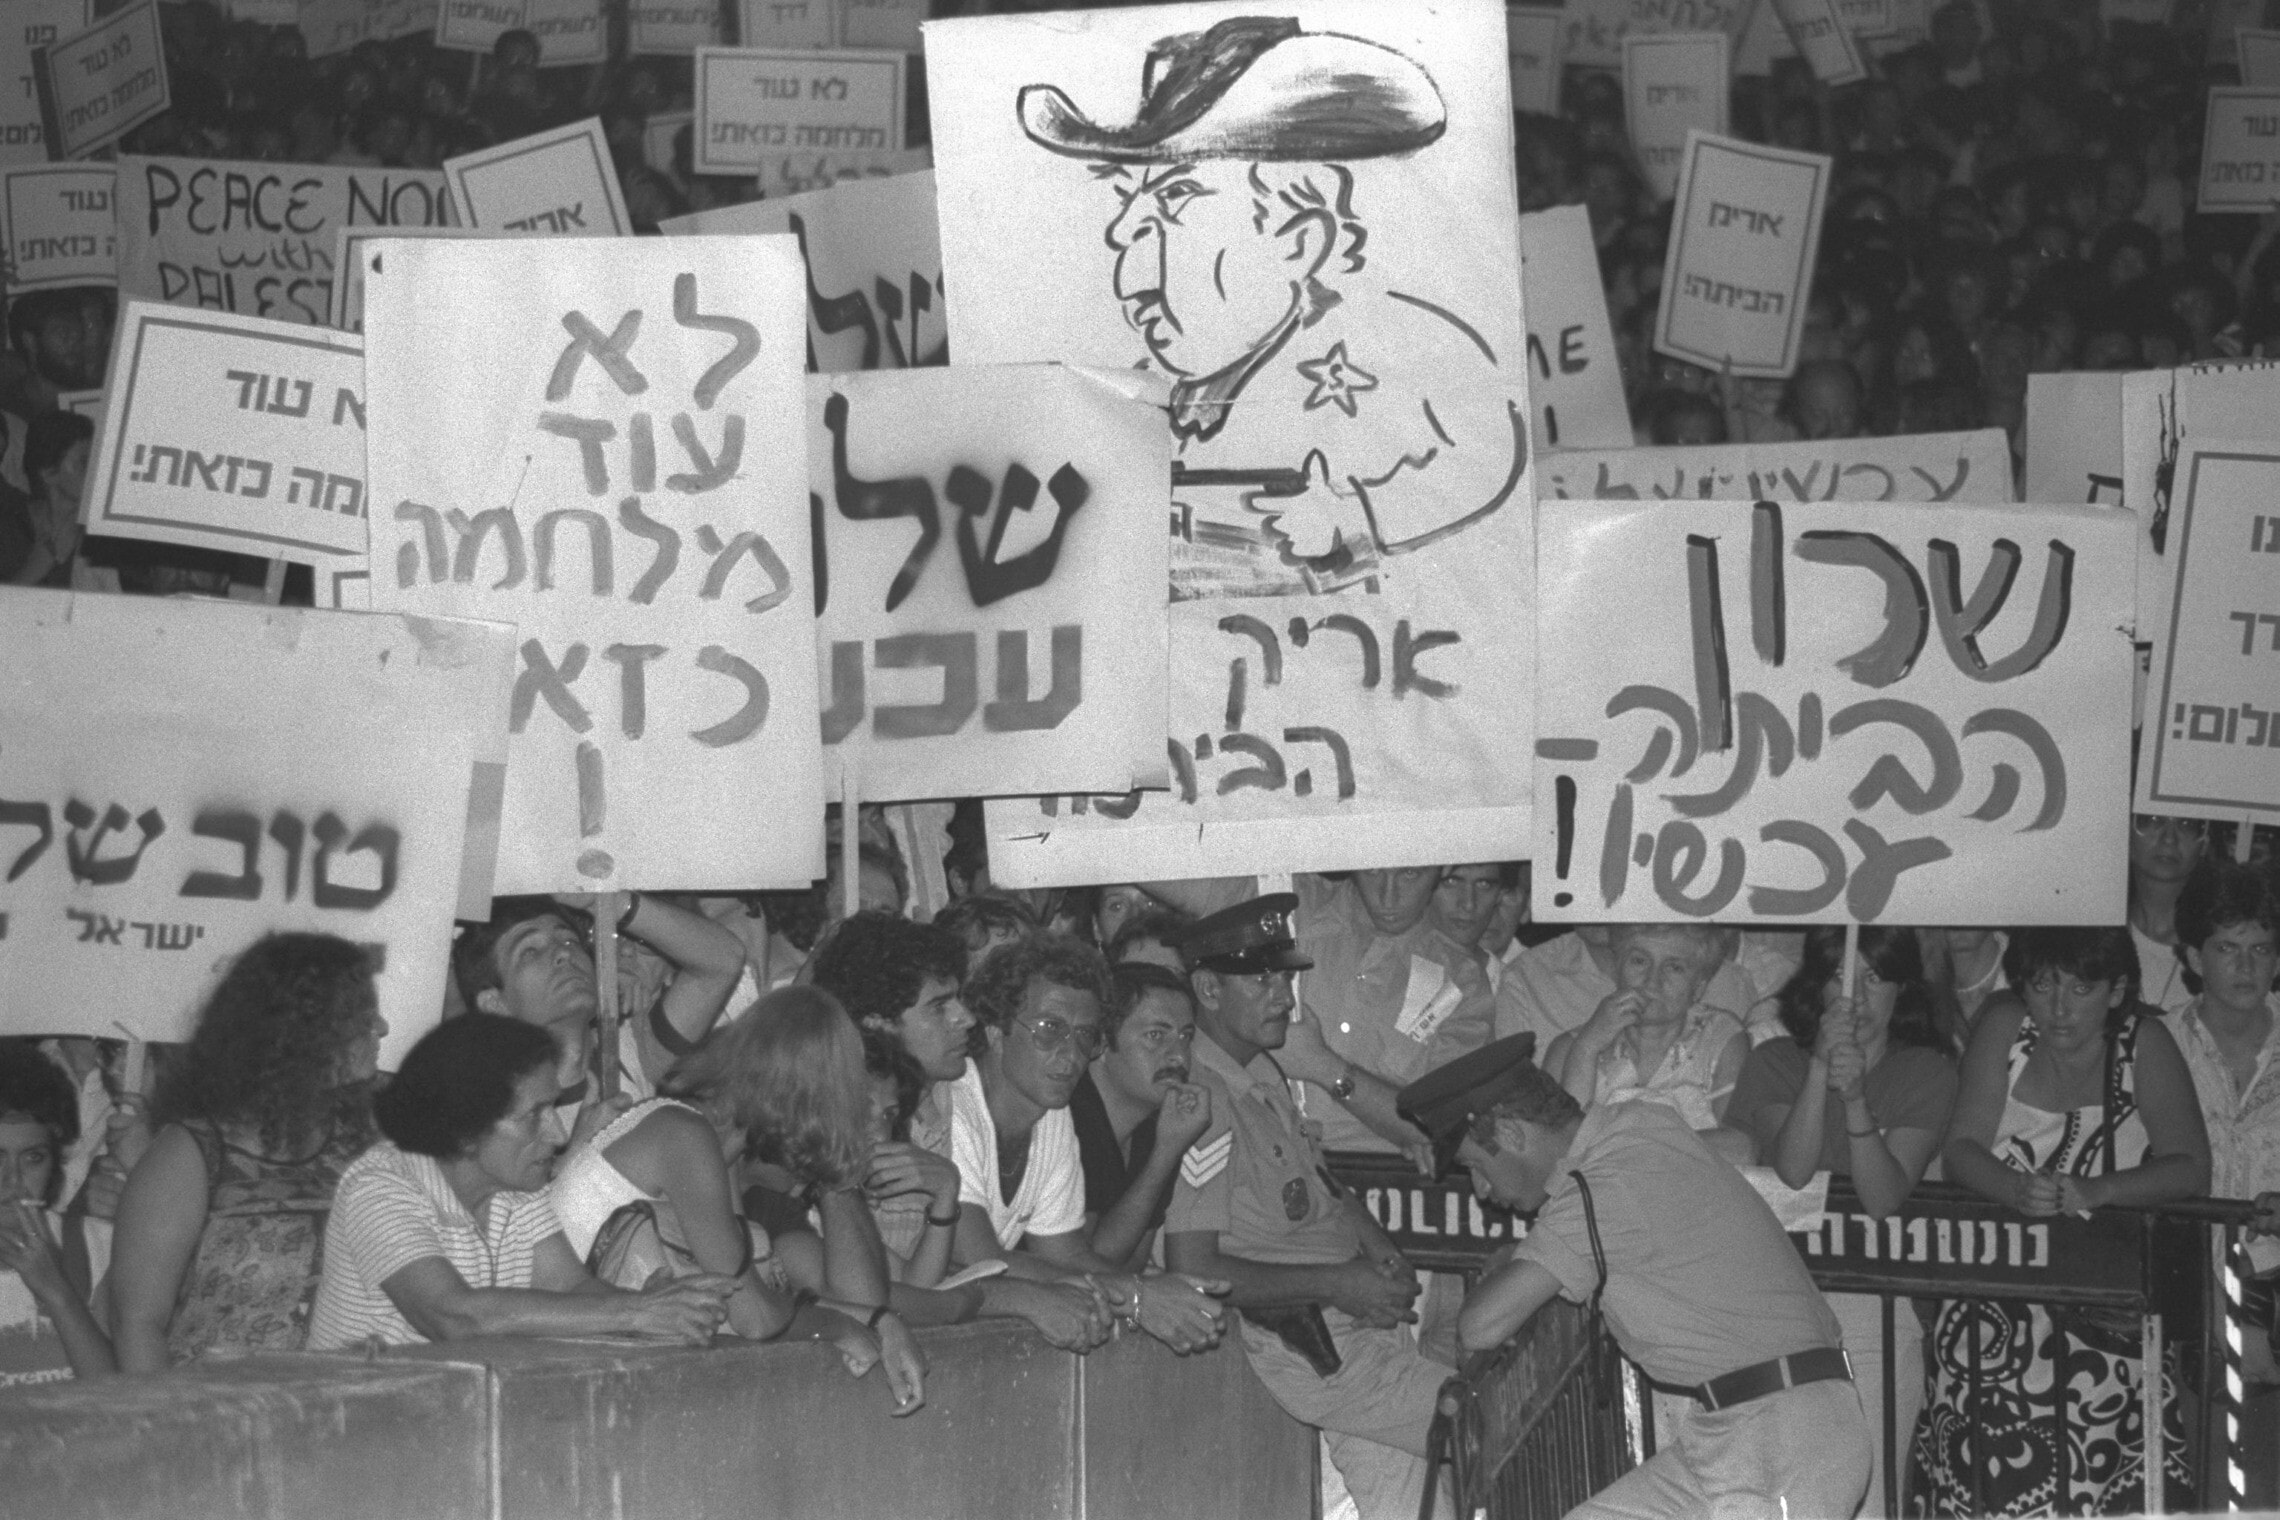 הפגנת &quot;שלום עכשיו&quot; נגד המשך הלחימה בלבנון, בכיכר מלכי ישראל בתל אביב, 3 ביולי 1982 (צילום: יעקב סער/לע&quot;מ)